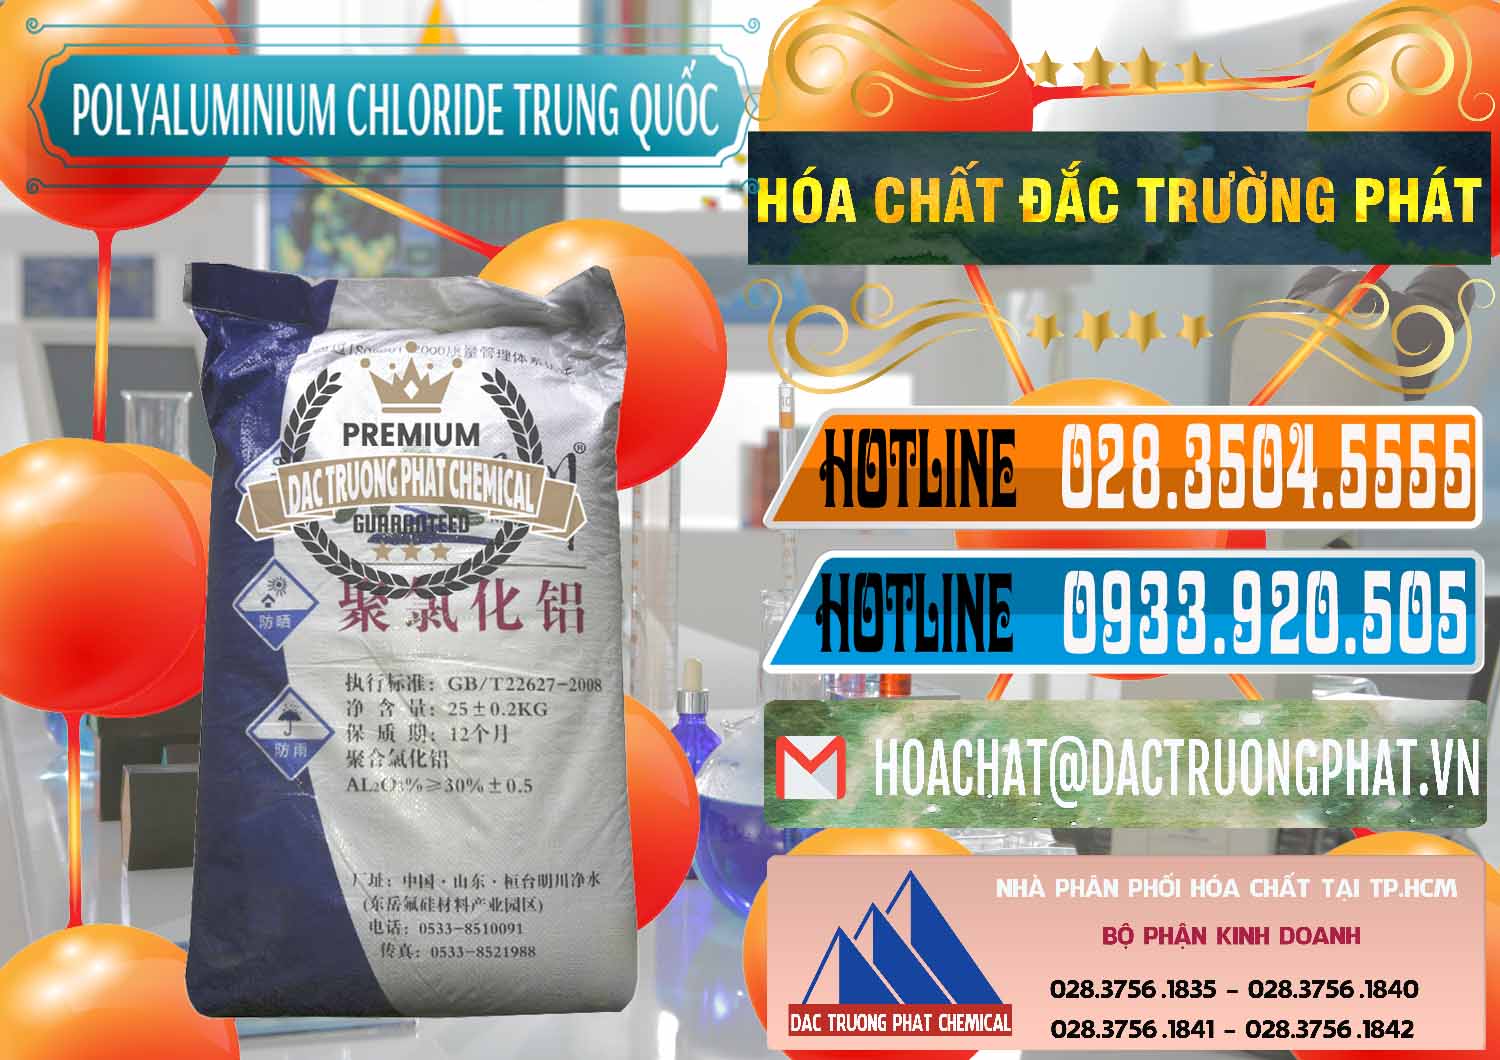 Cty chuyên cung ứng & bán PAC - Polyaluminium Chloride Mingchuan Trung Quốc China - 0445 - Đơn vị chuyên cung cấp ( nhập khẩu ) hóa chất tại TP.HCM - stmp.net